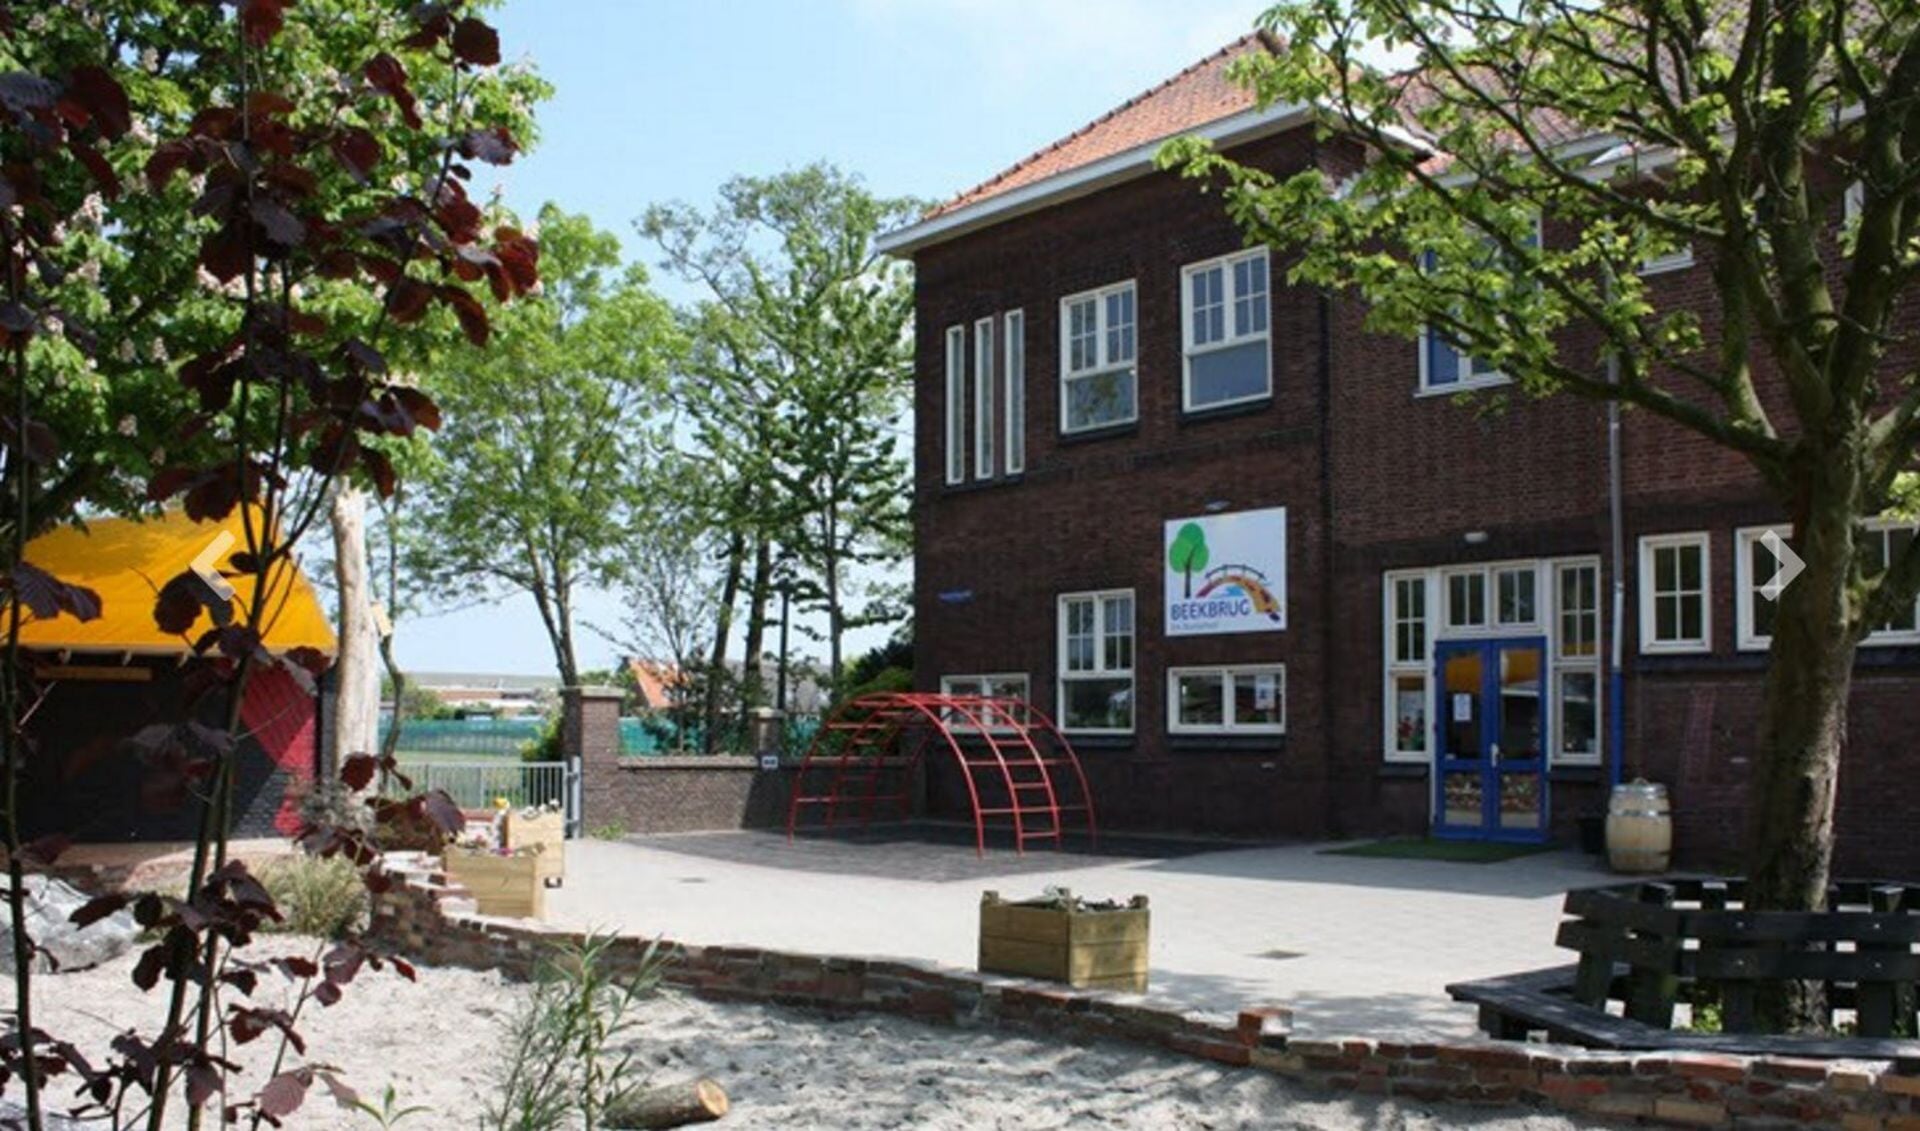 Voor de Beekbrugschool in De Engel heeft de fusie geen effect, sluiting is al definitief. Hetzelfde geldt voor de Rembrandtschool.